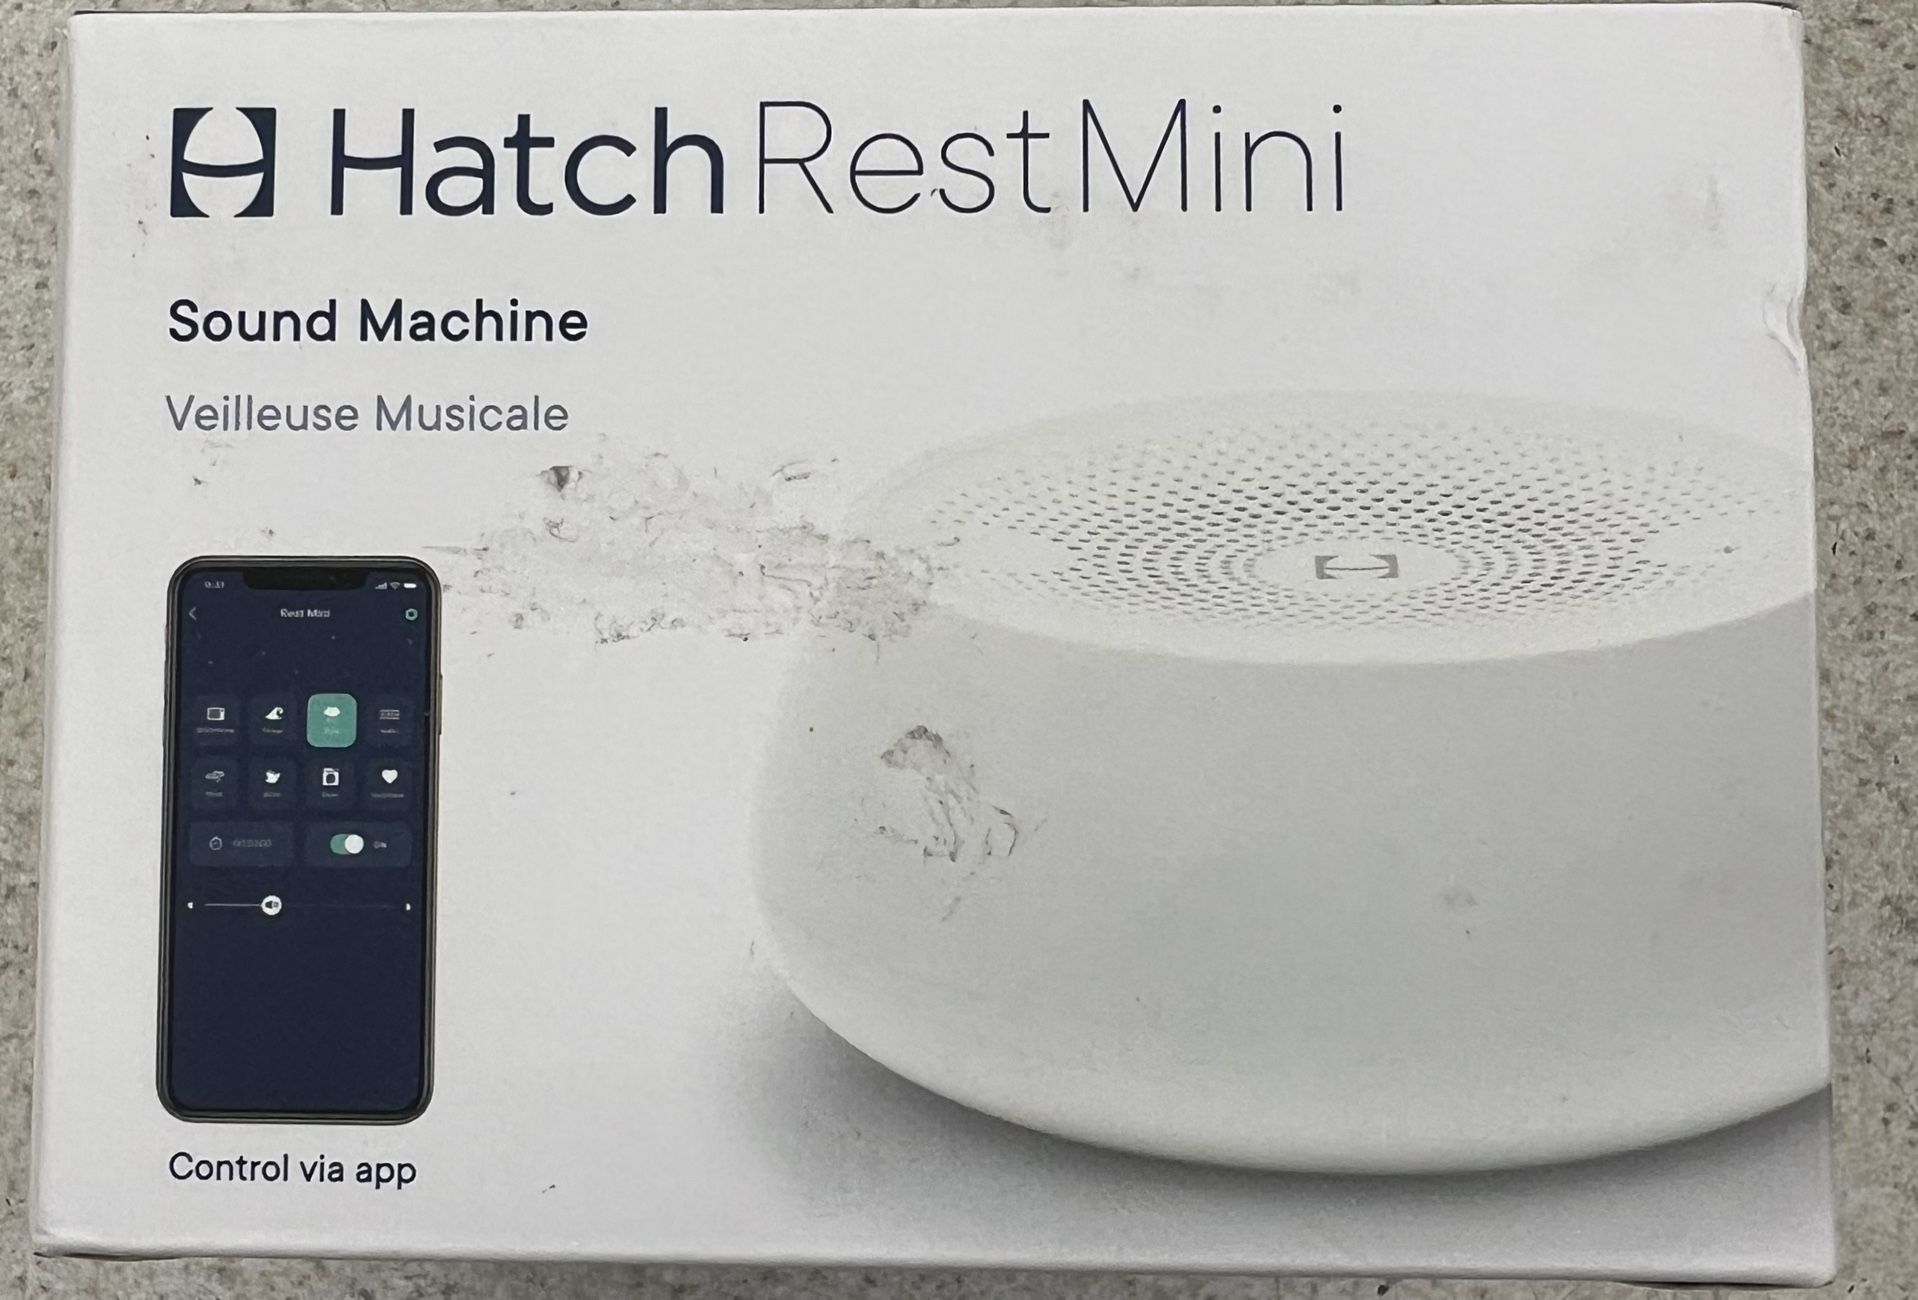 Hatch Rest Mini Sound Machine For Baby